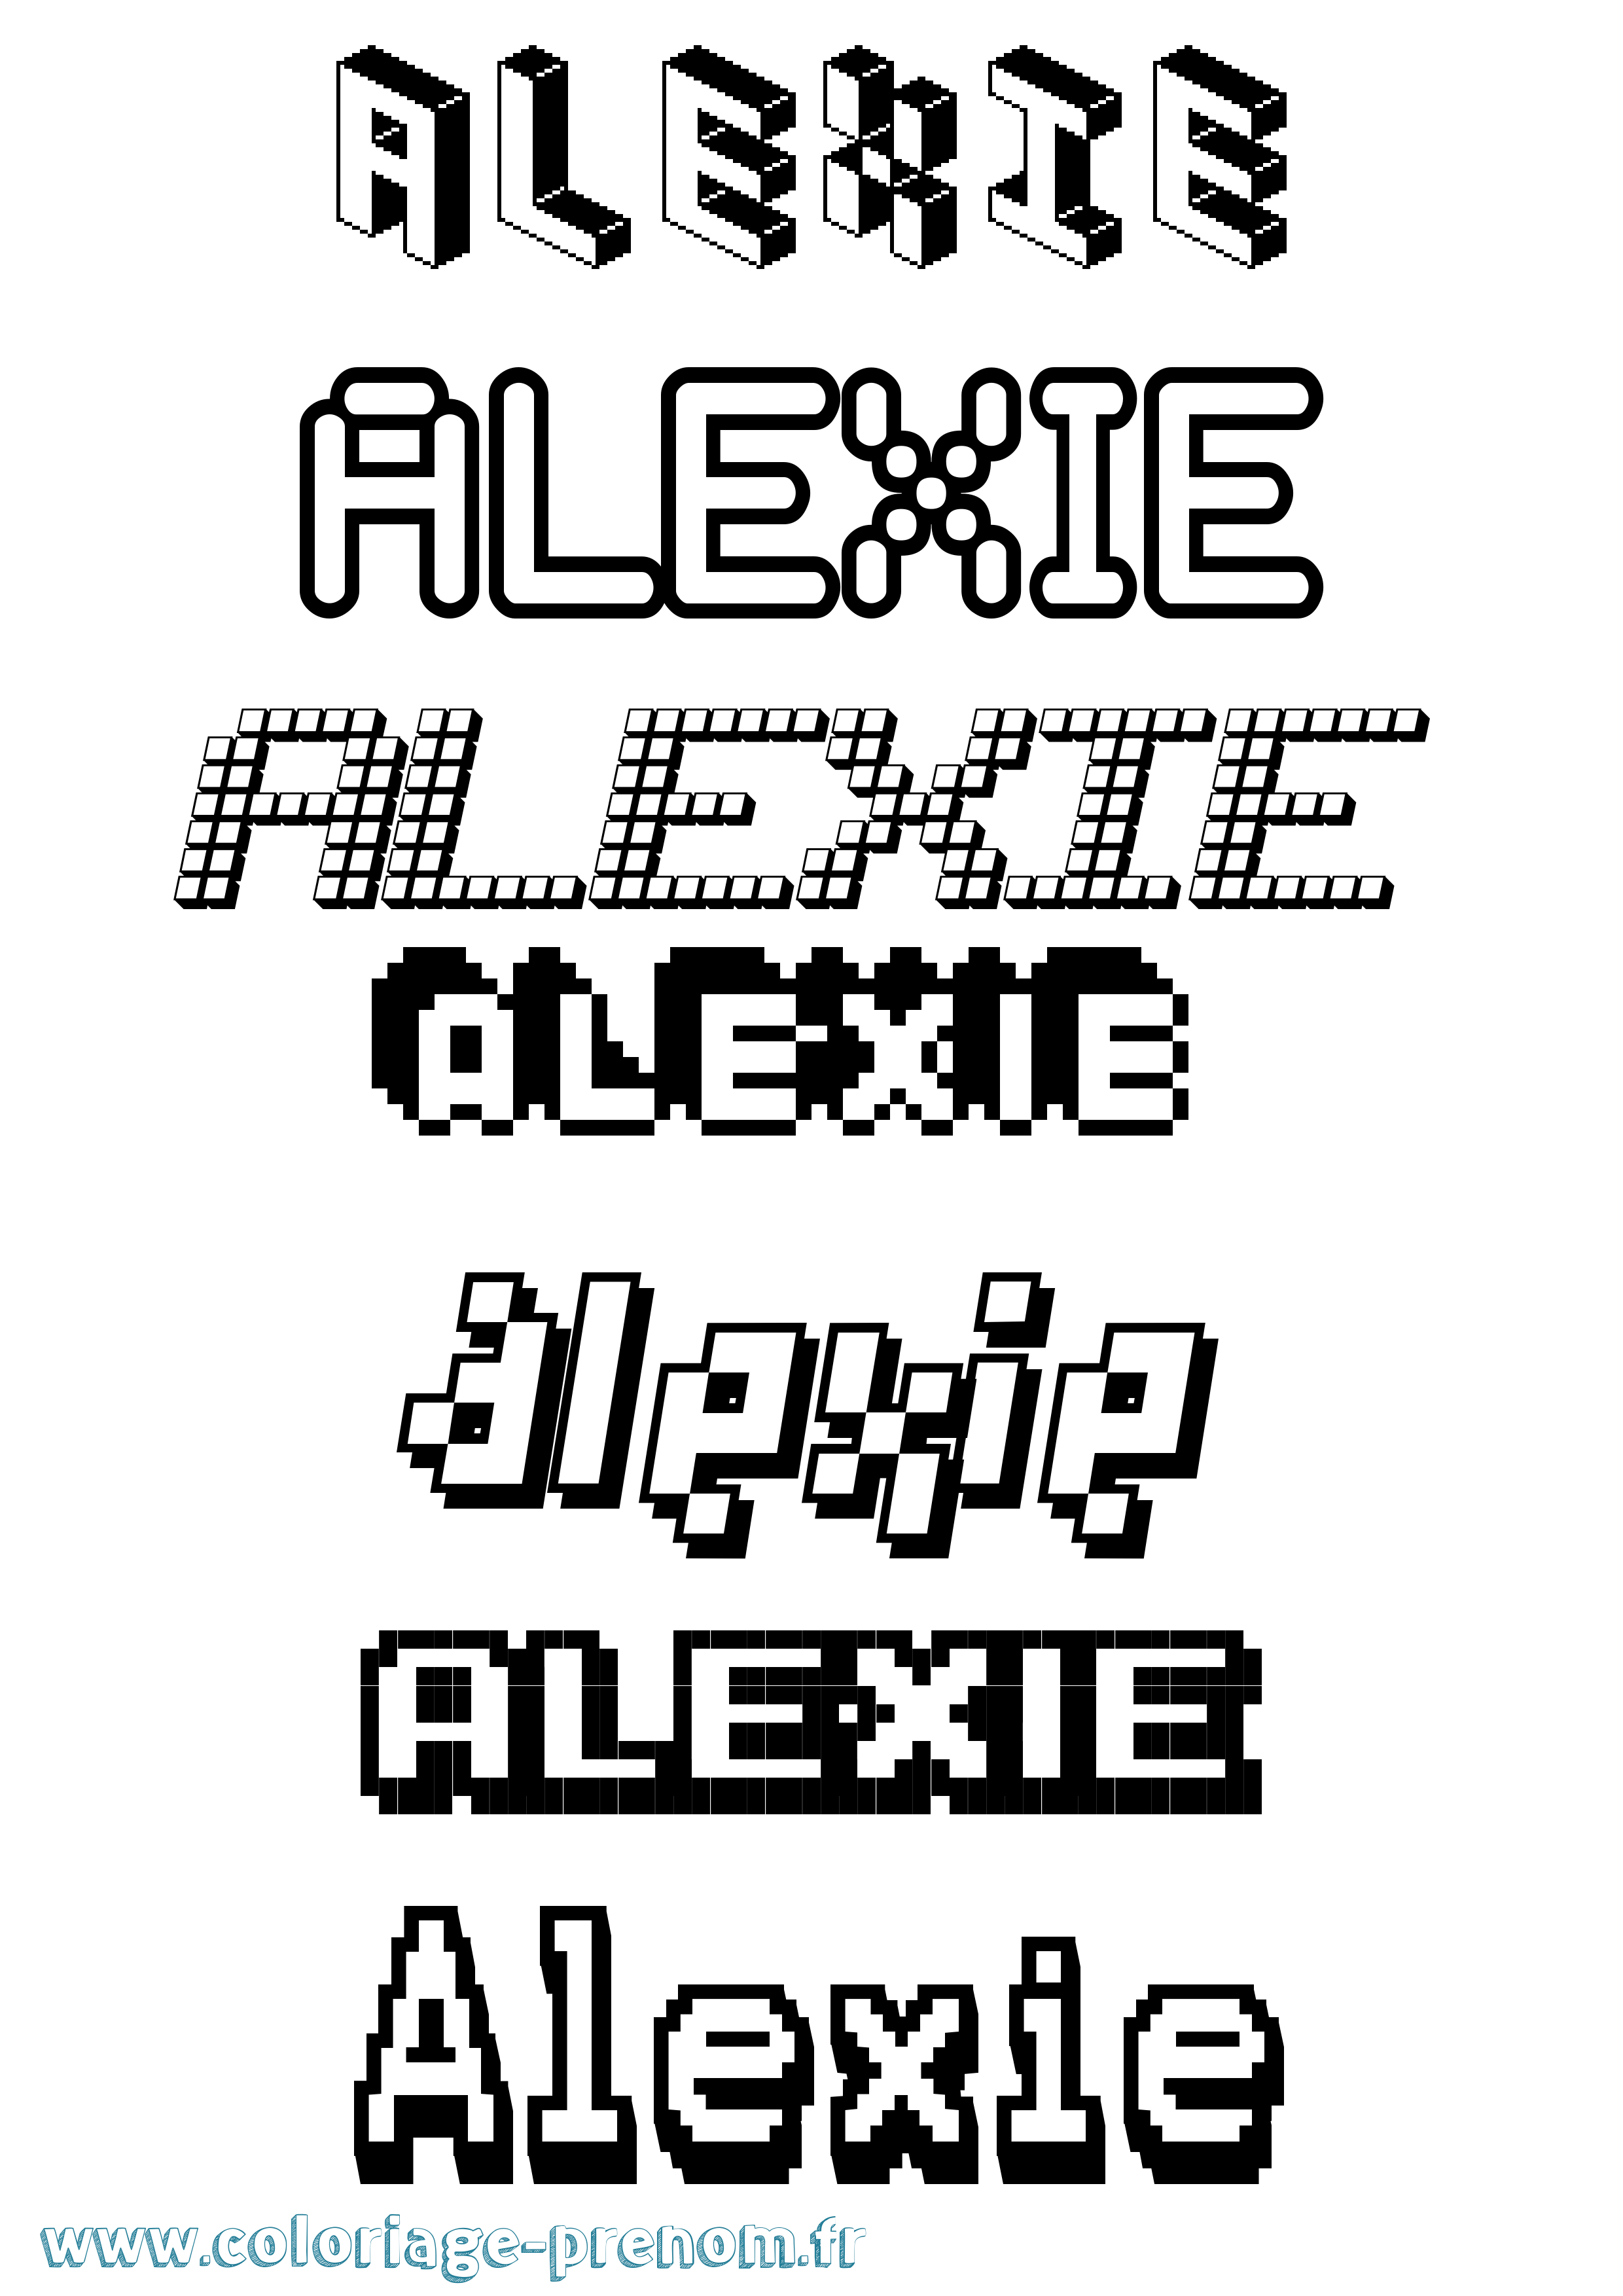 Coloriage prénom Alexie Pixel